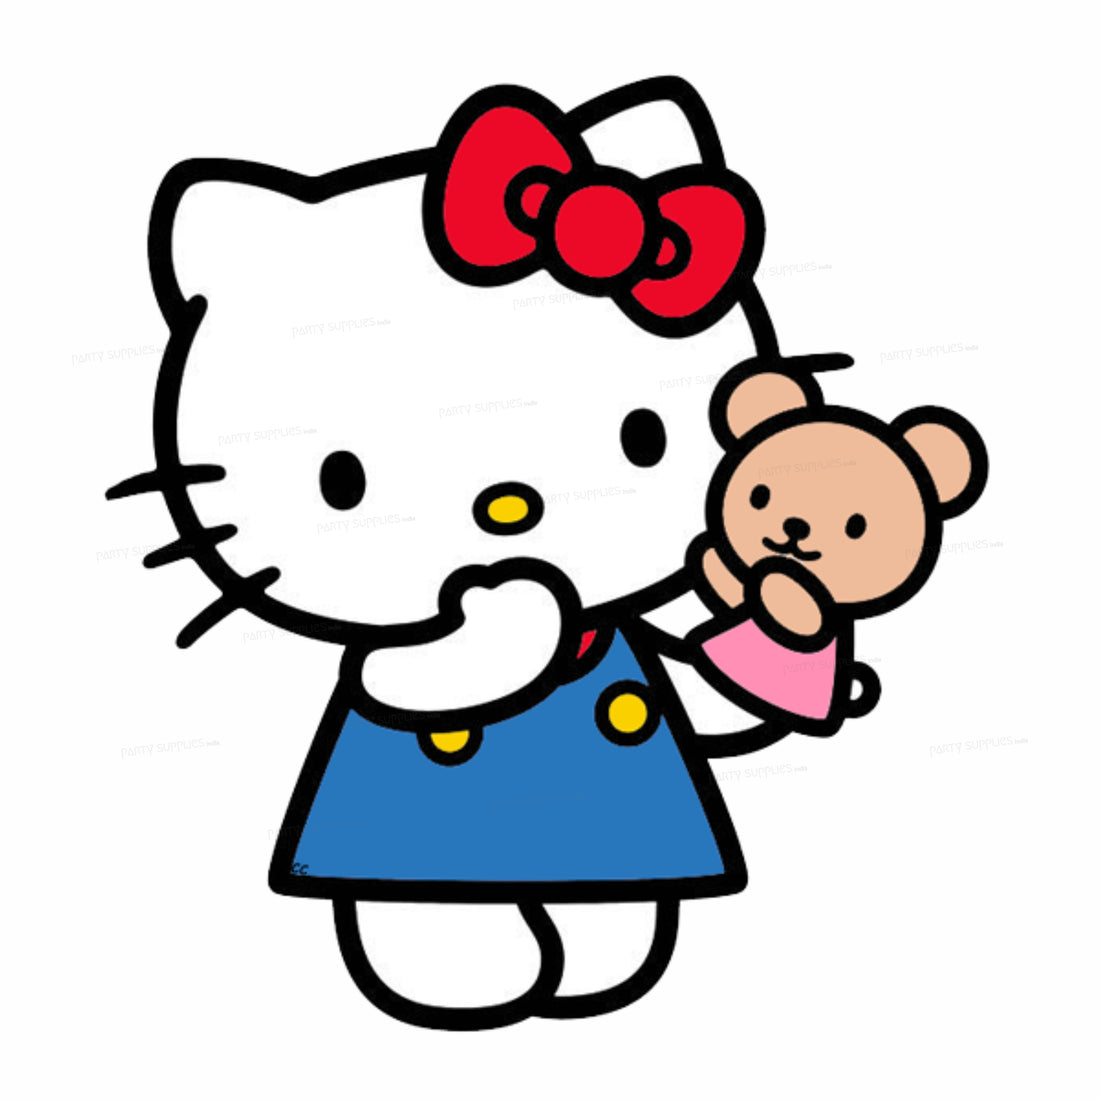 PSI Hello Kitty Theme Cutout - 02